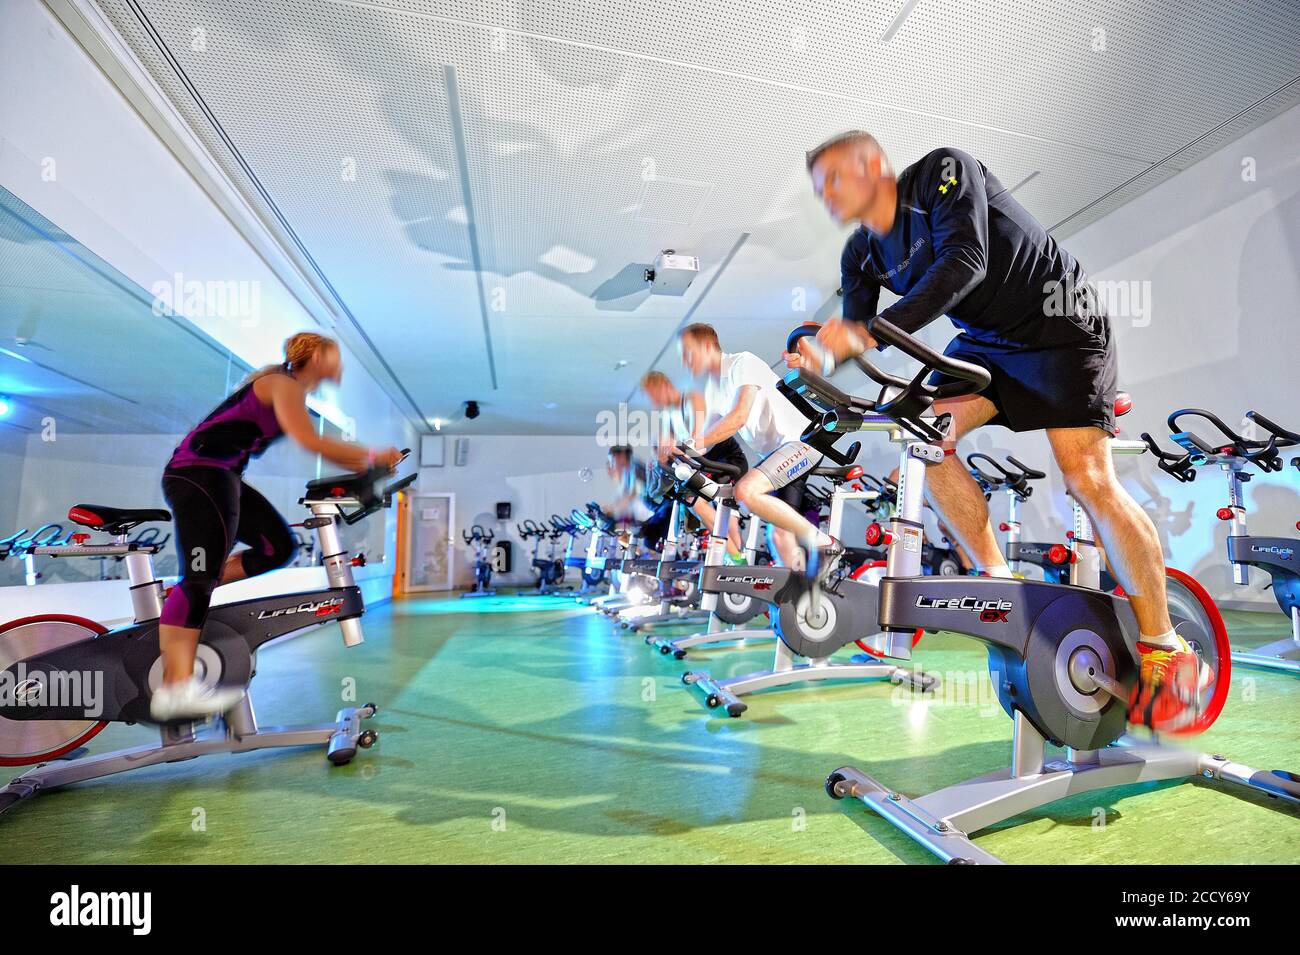 Les gens s'entraînent à domicile dans un studio de fitness, en Allemagne Banque D'Images